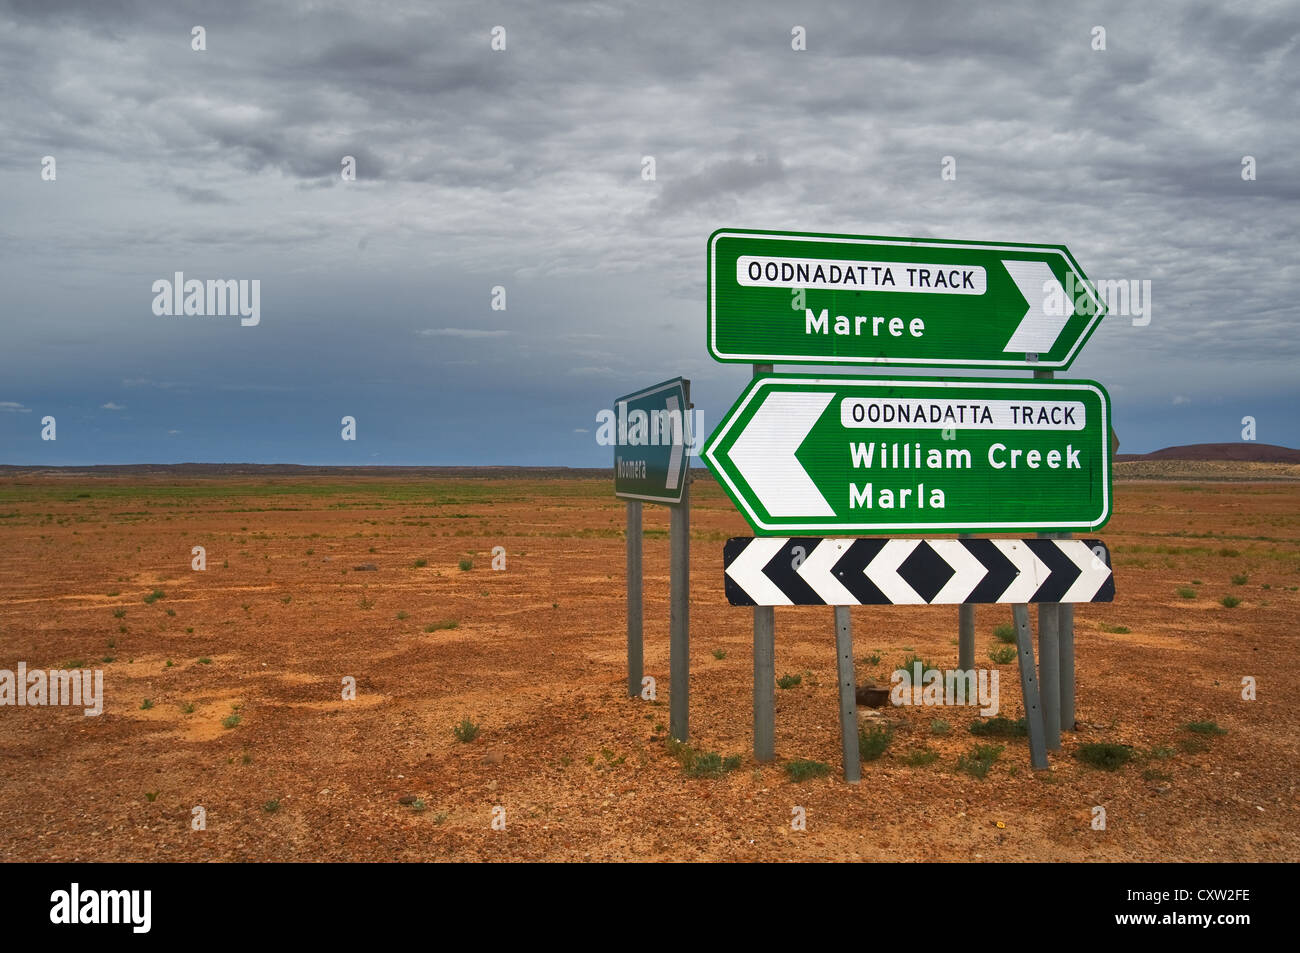 Panneau routier à la célèbre piste Oodnadatta en désert de l'Australie du Sud. Banque D'Images